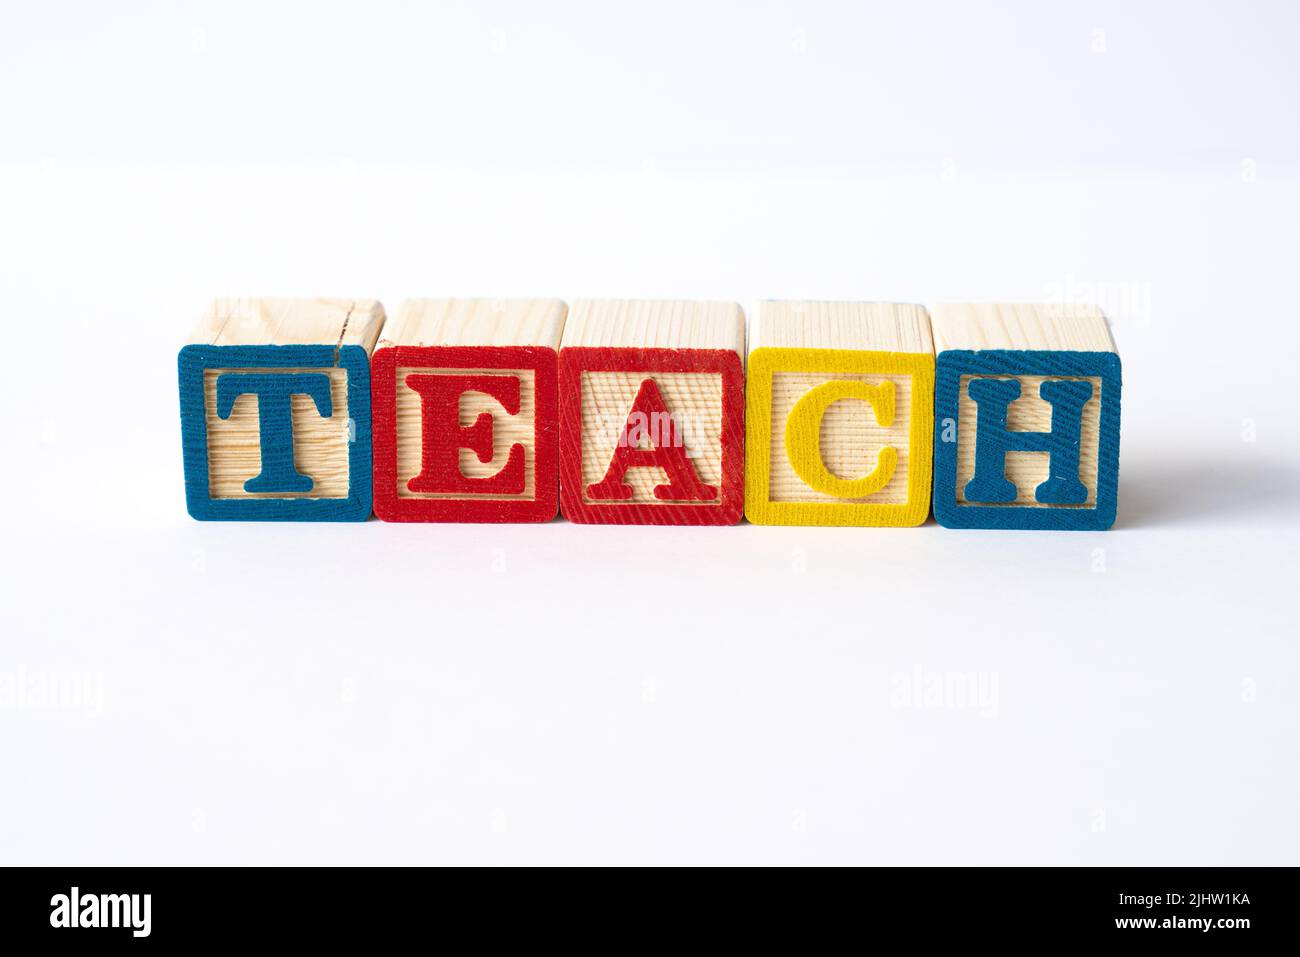 Le mot Teach orthographié avec des blocs de jouets colorés sur un fond blanc Banque D'Images